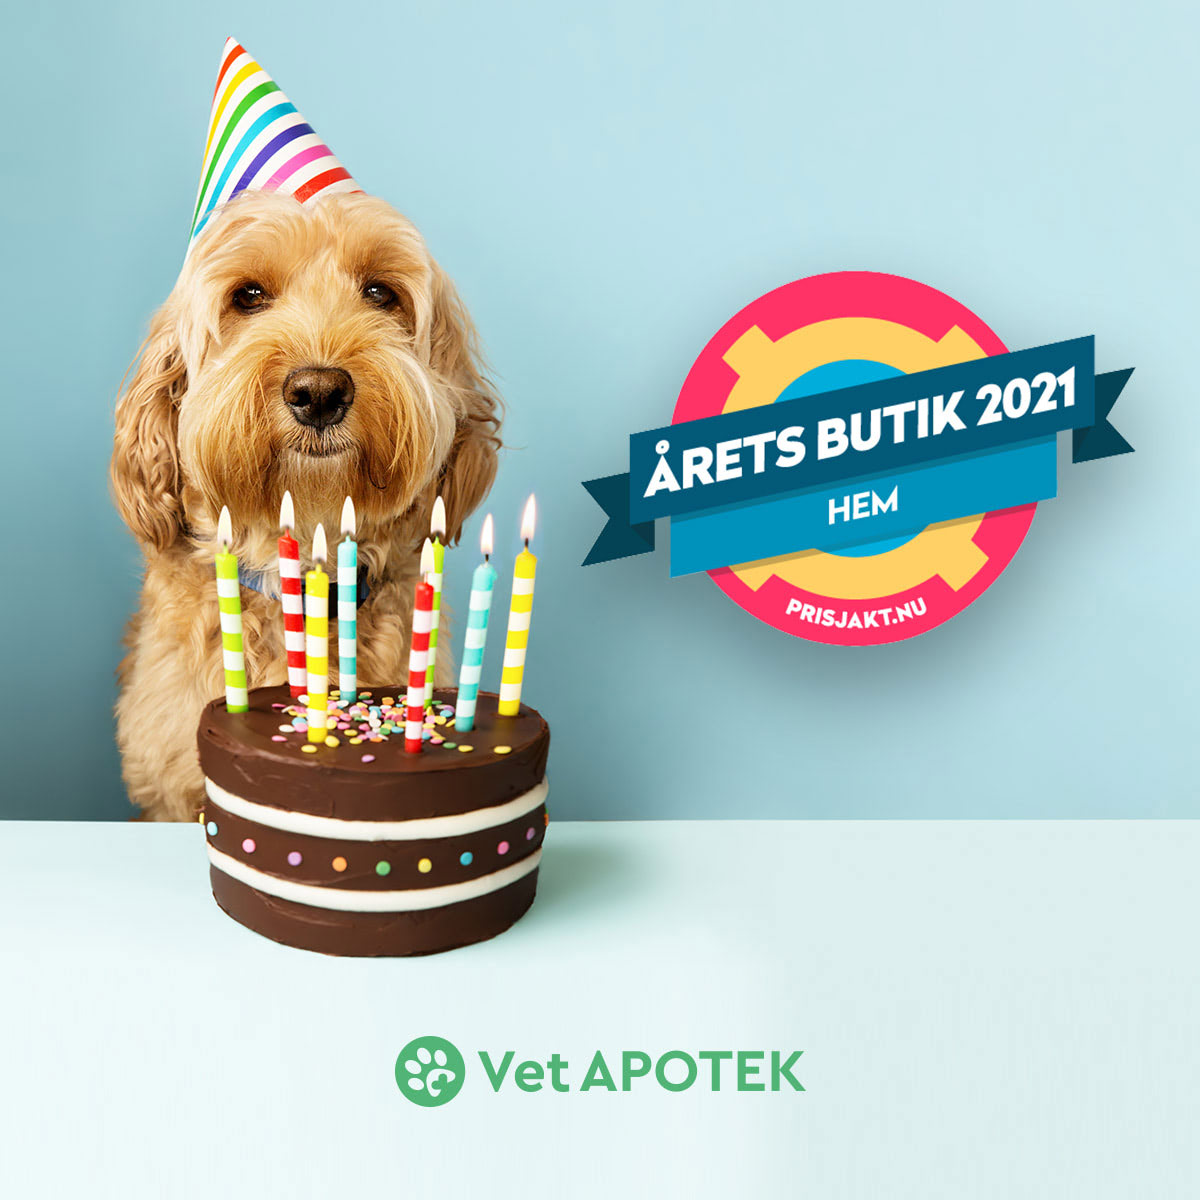 Grattis till Årets Butik - VetApotek.se